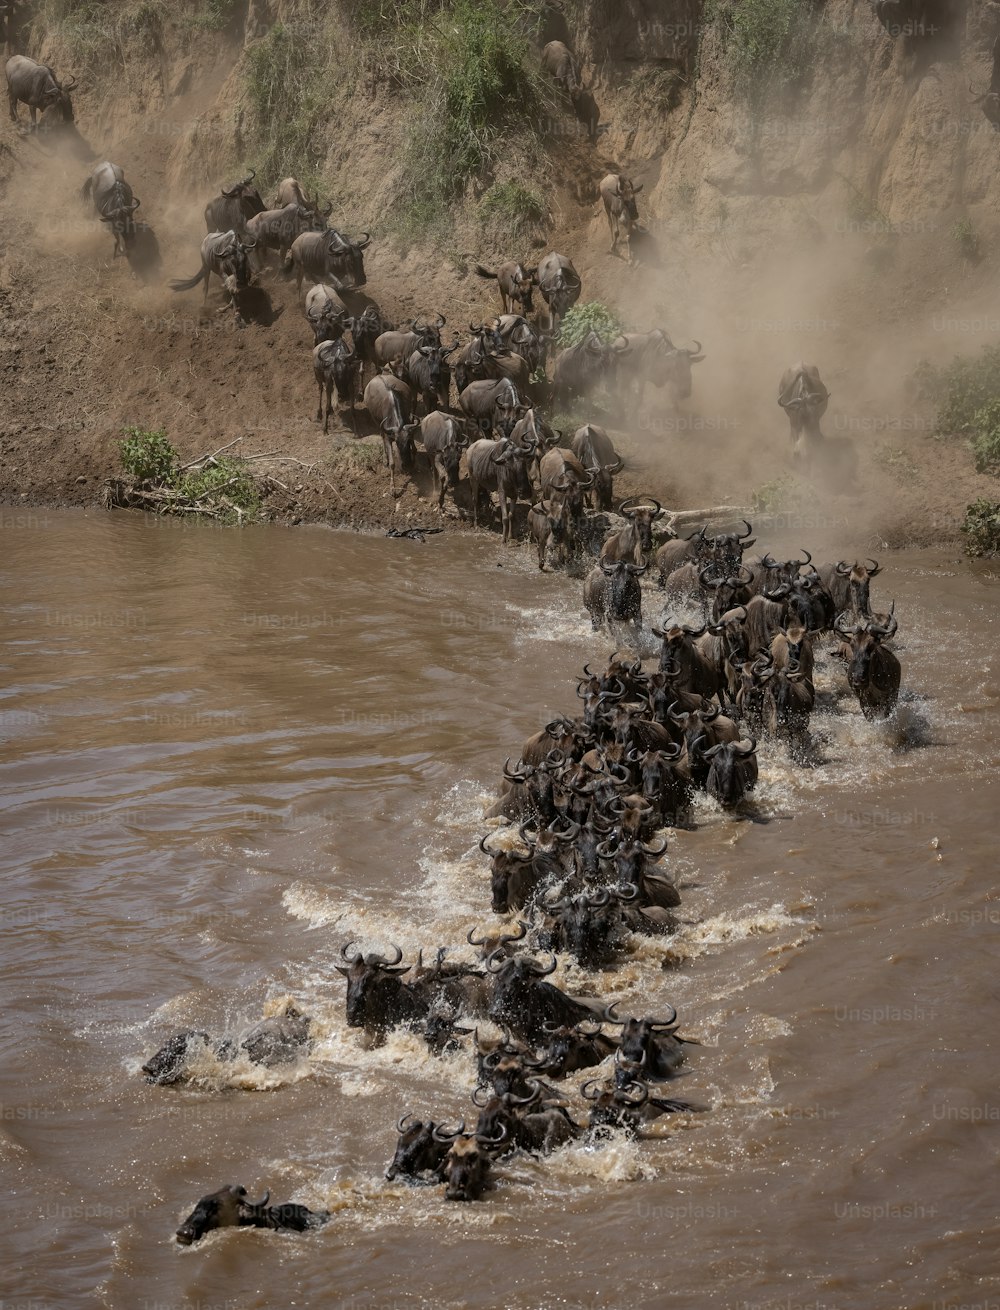 La migration des gnous en Afrique